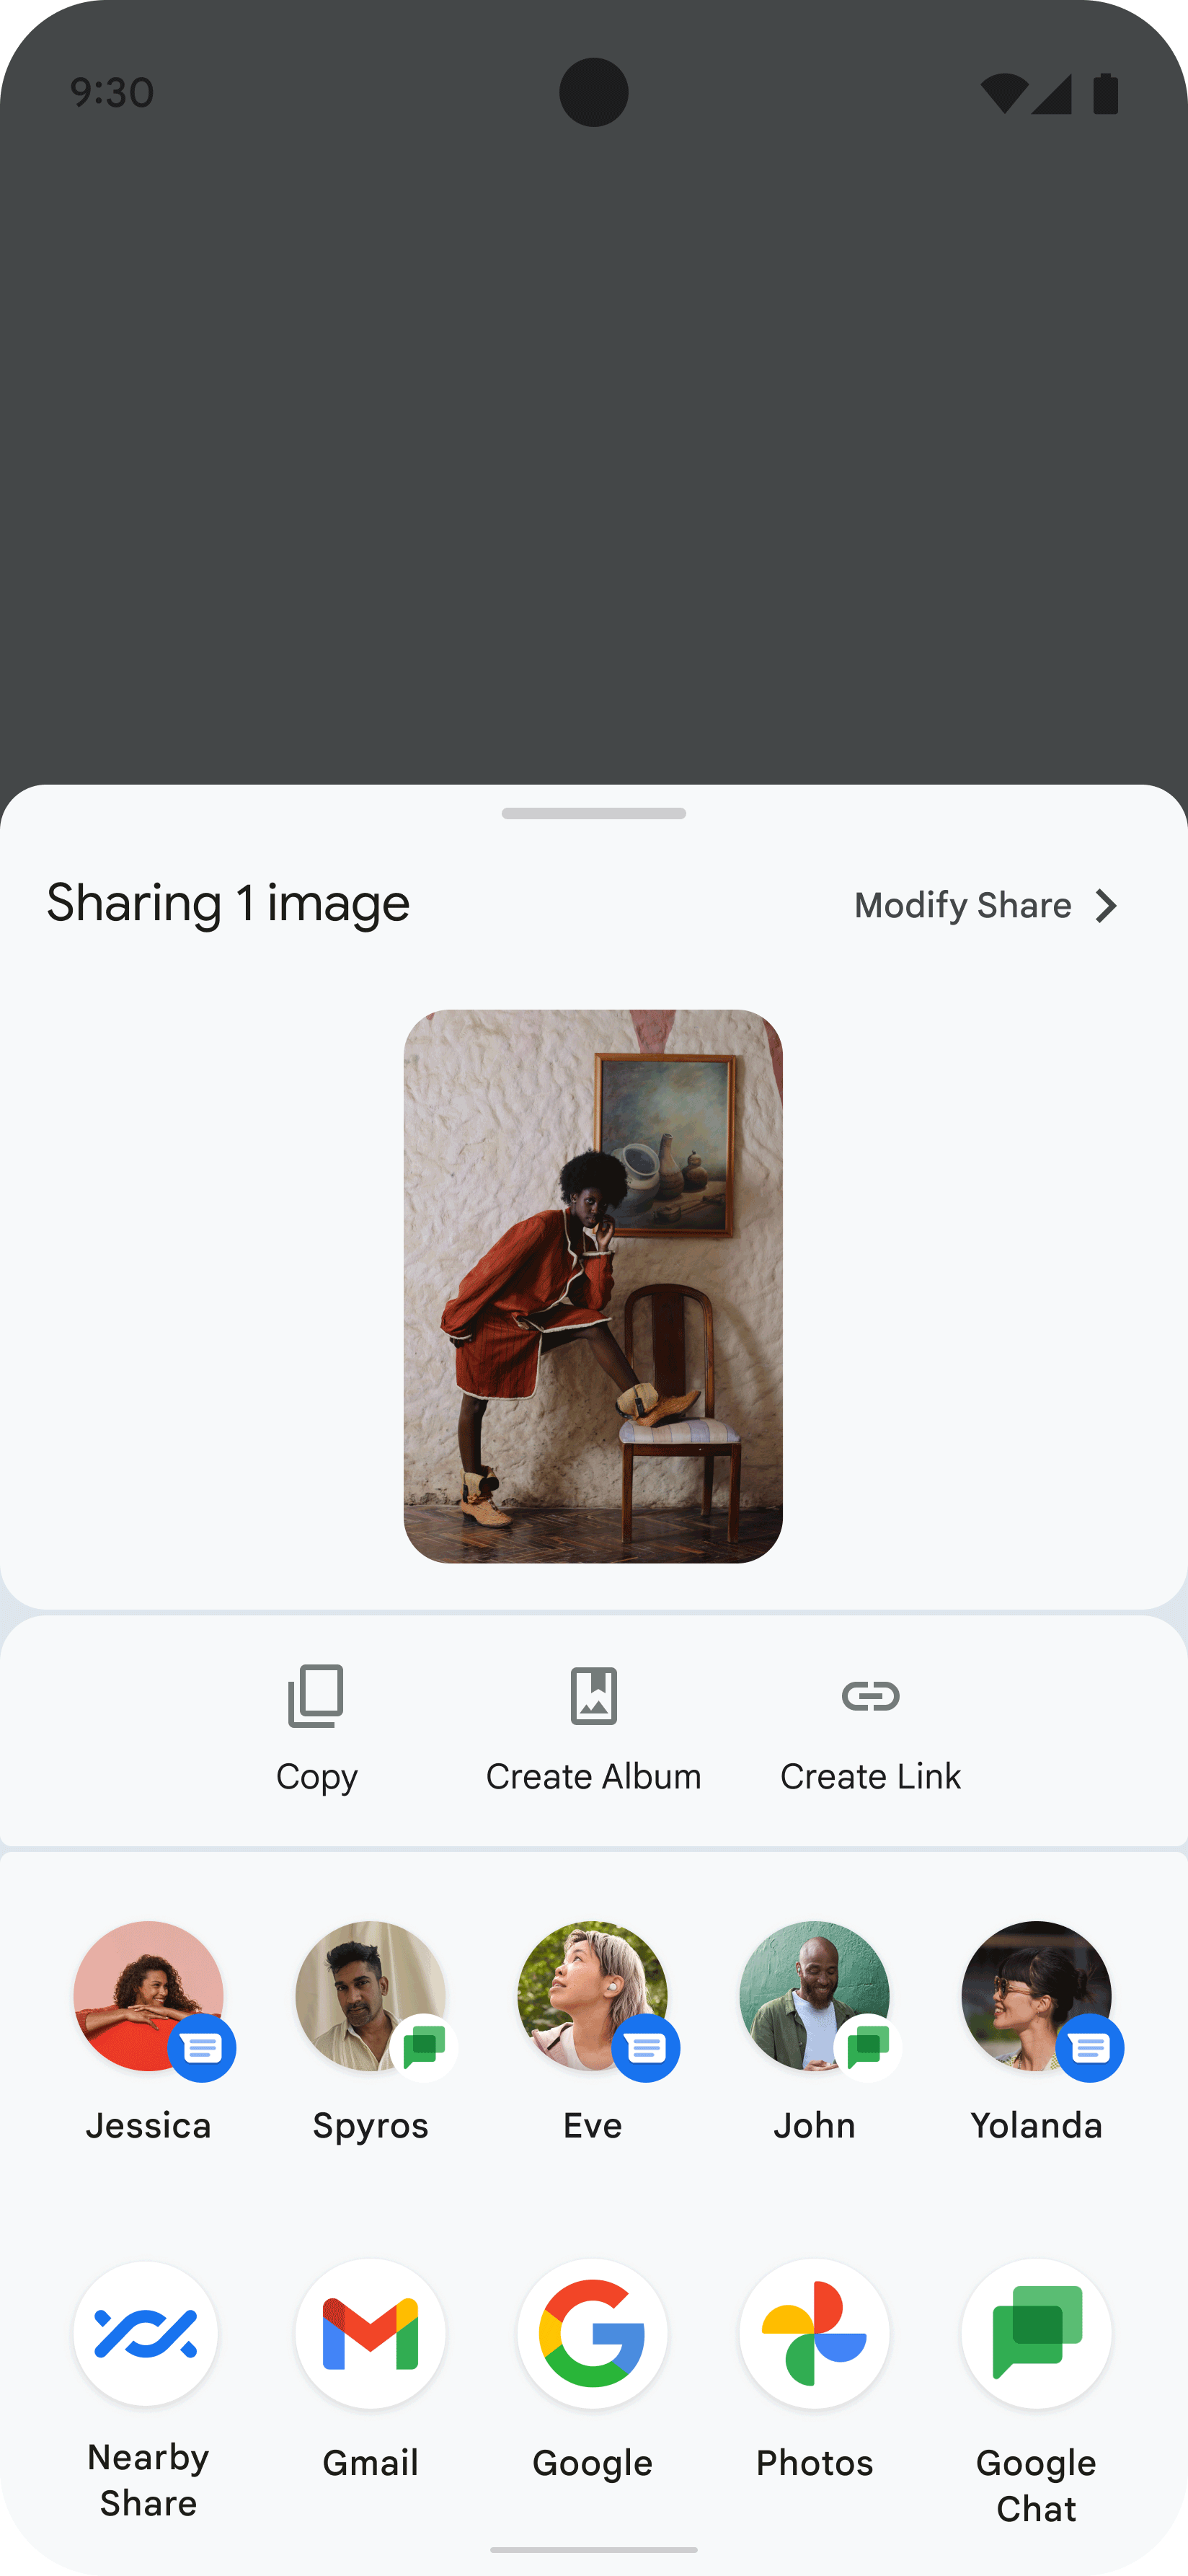 この画像は、ユーザーが人物の画像を共有した結果としてアプリに表示された共有シートを示しています。共有シートには、画像を共有する連絡先とアプリを表す複数のアイコンが表示されています。